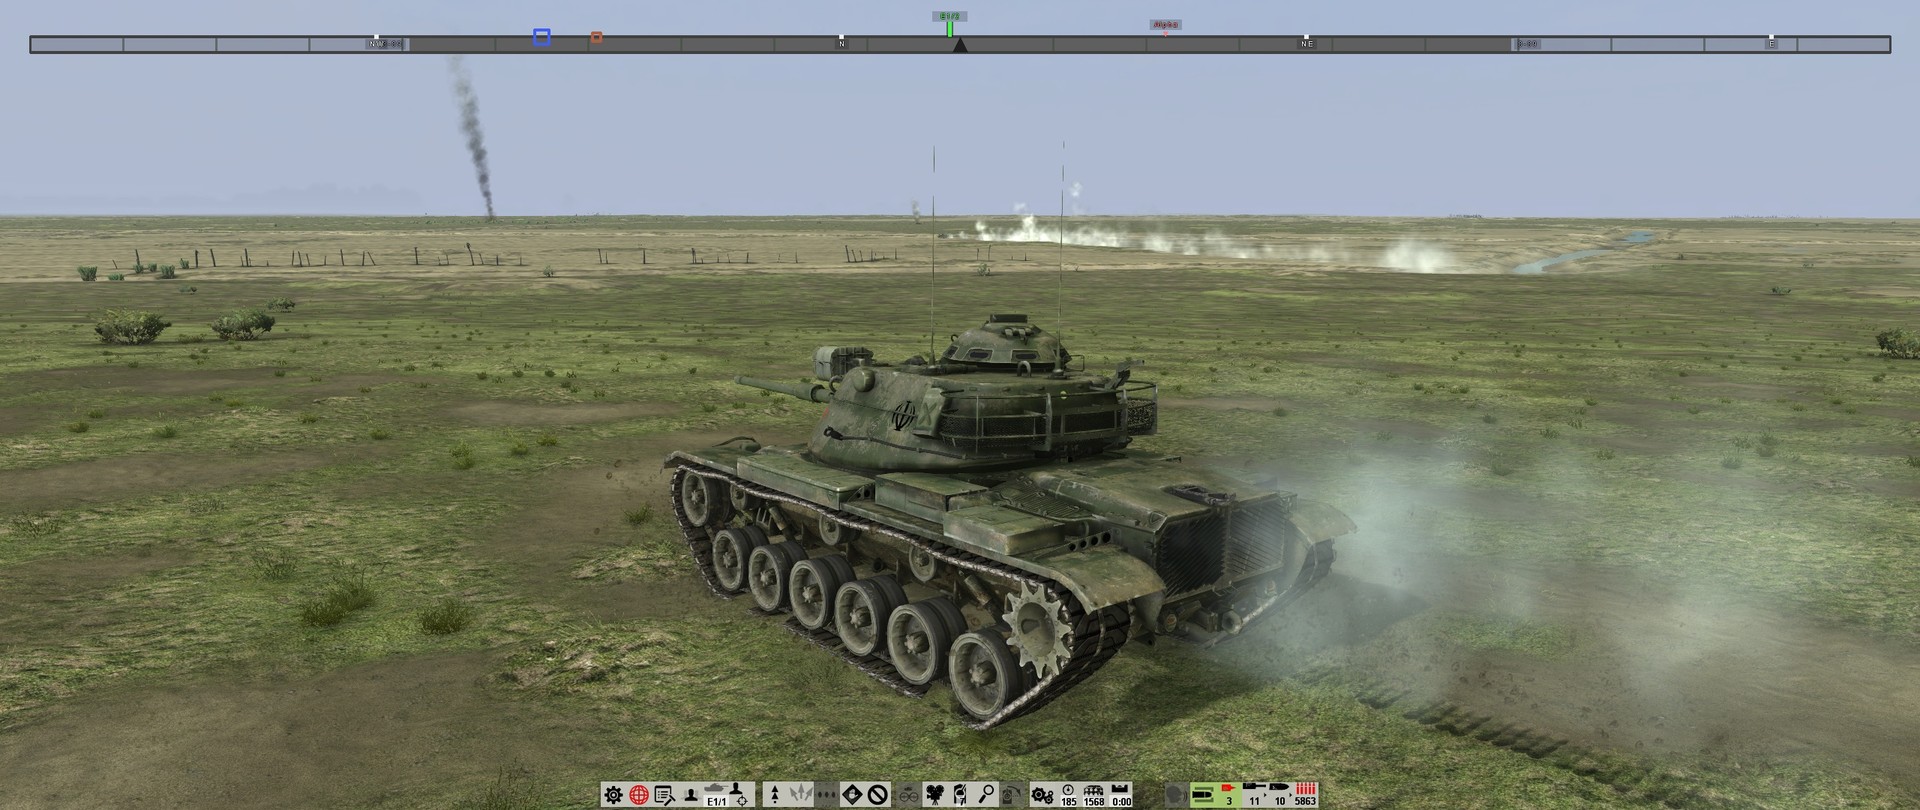 Тип ворлд. Браузерный танковый симулятор 2000 Steel Armor. Игра стальной удар оскал войны.